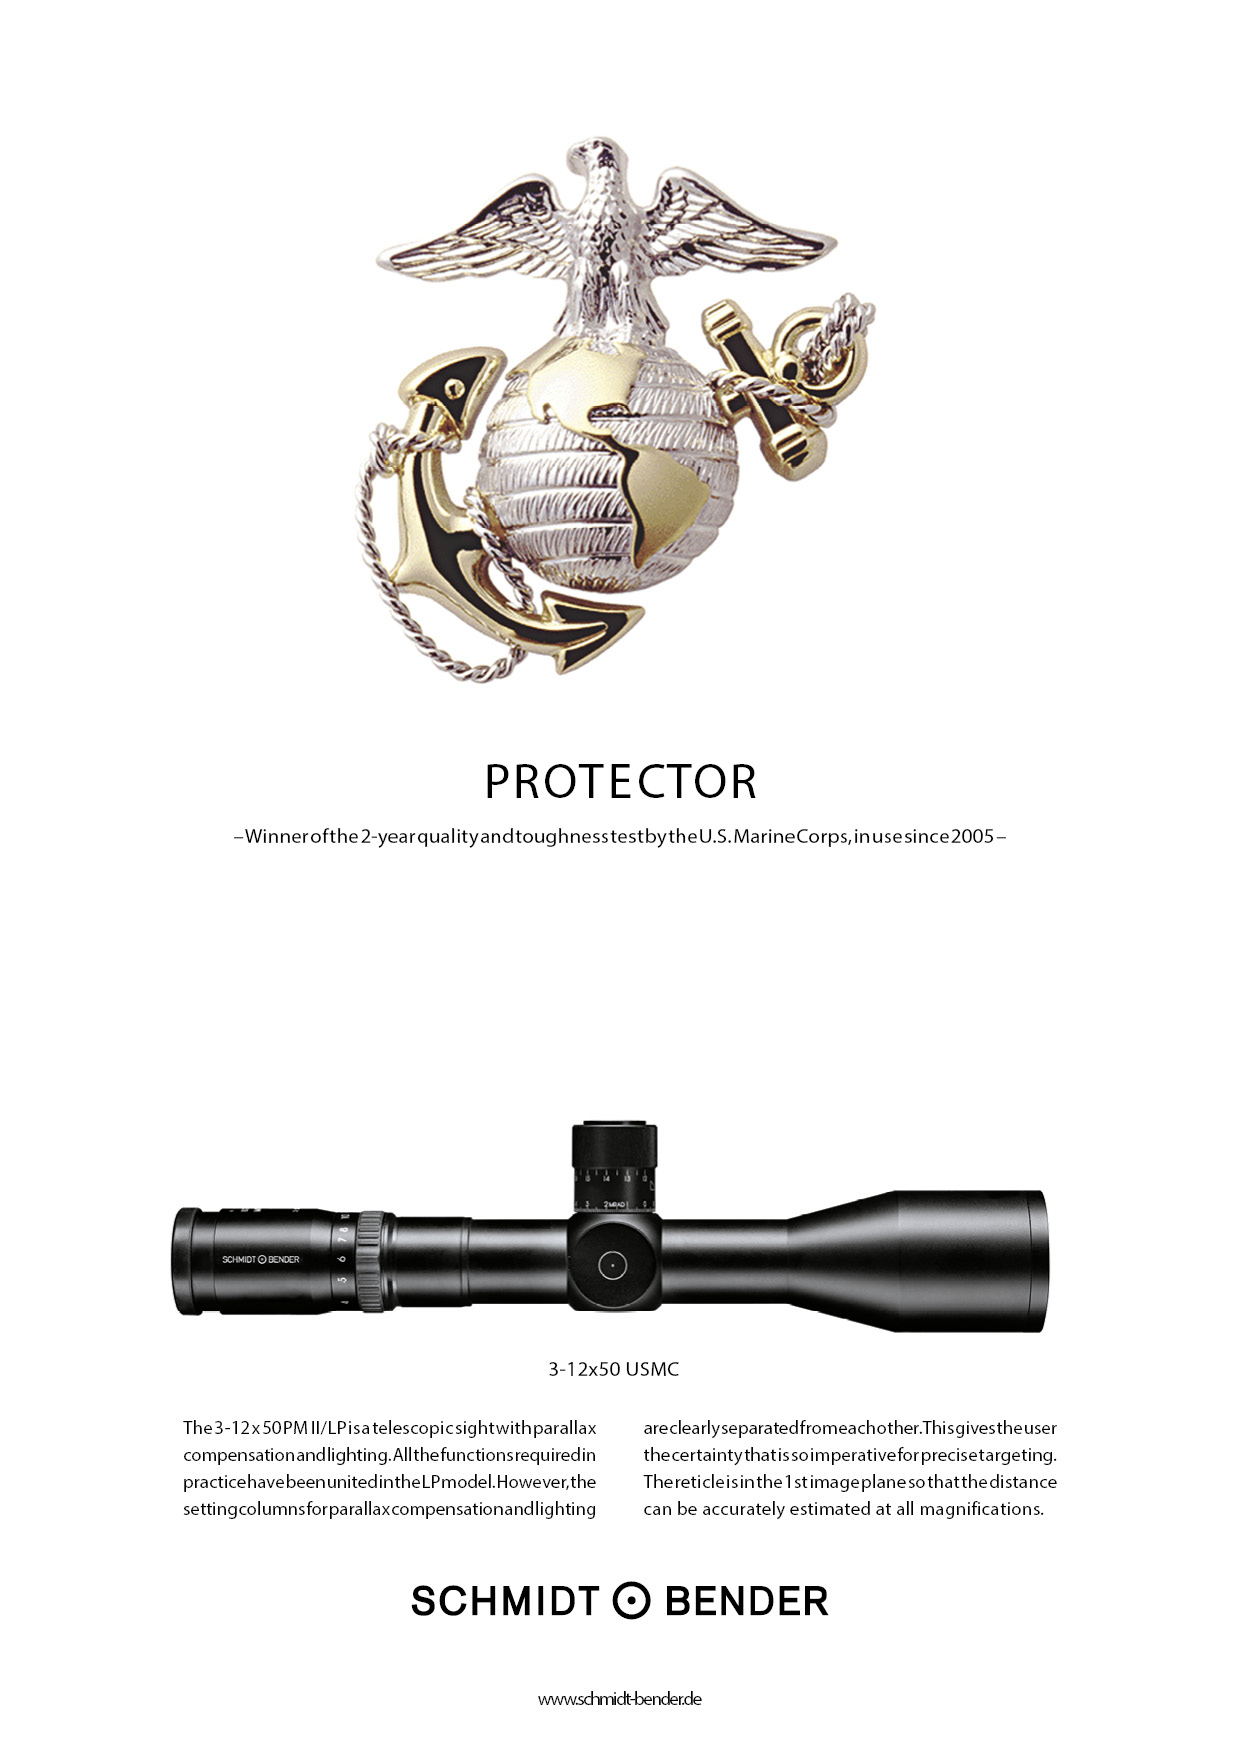 Werbeanzeige „Protector“ für das 3-12x50 PM II mit Logo des U.S. Marine Corps